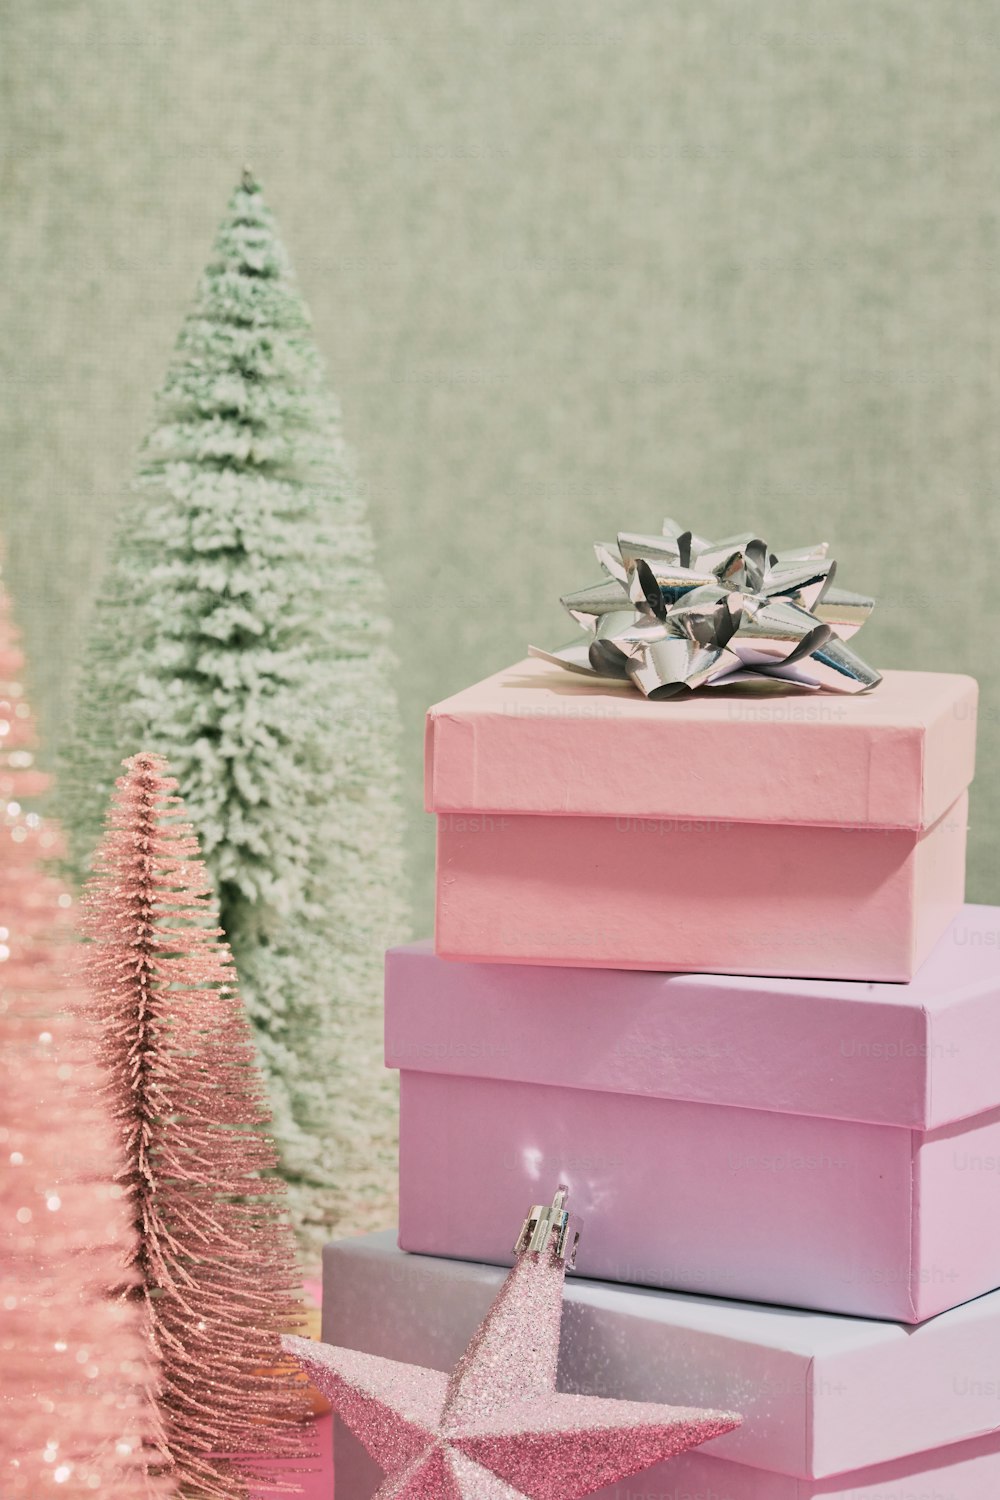 Uma pilha de caixas cor-de-rosa sentada ao lado de uma árvore de Natal